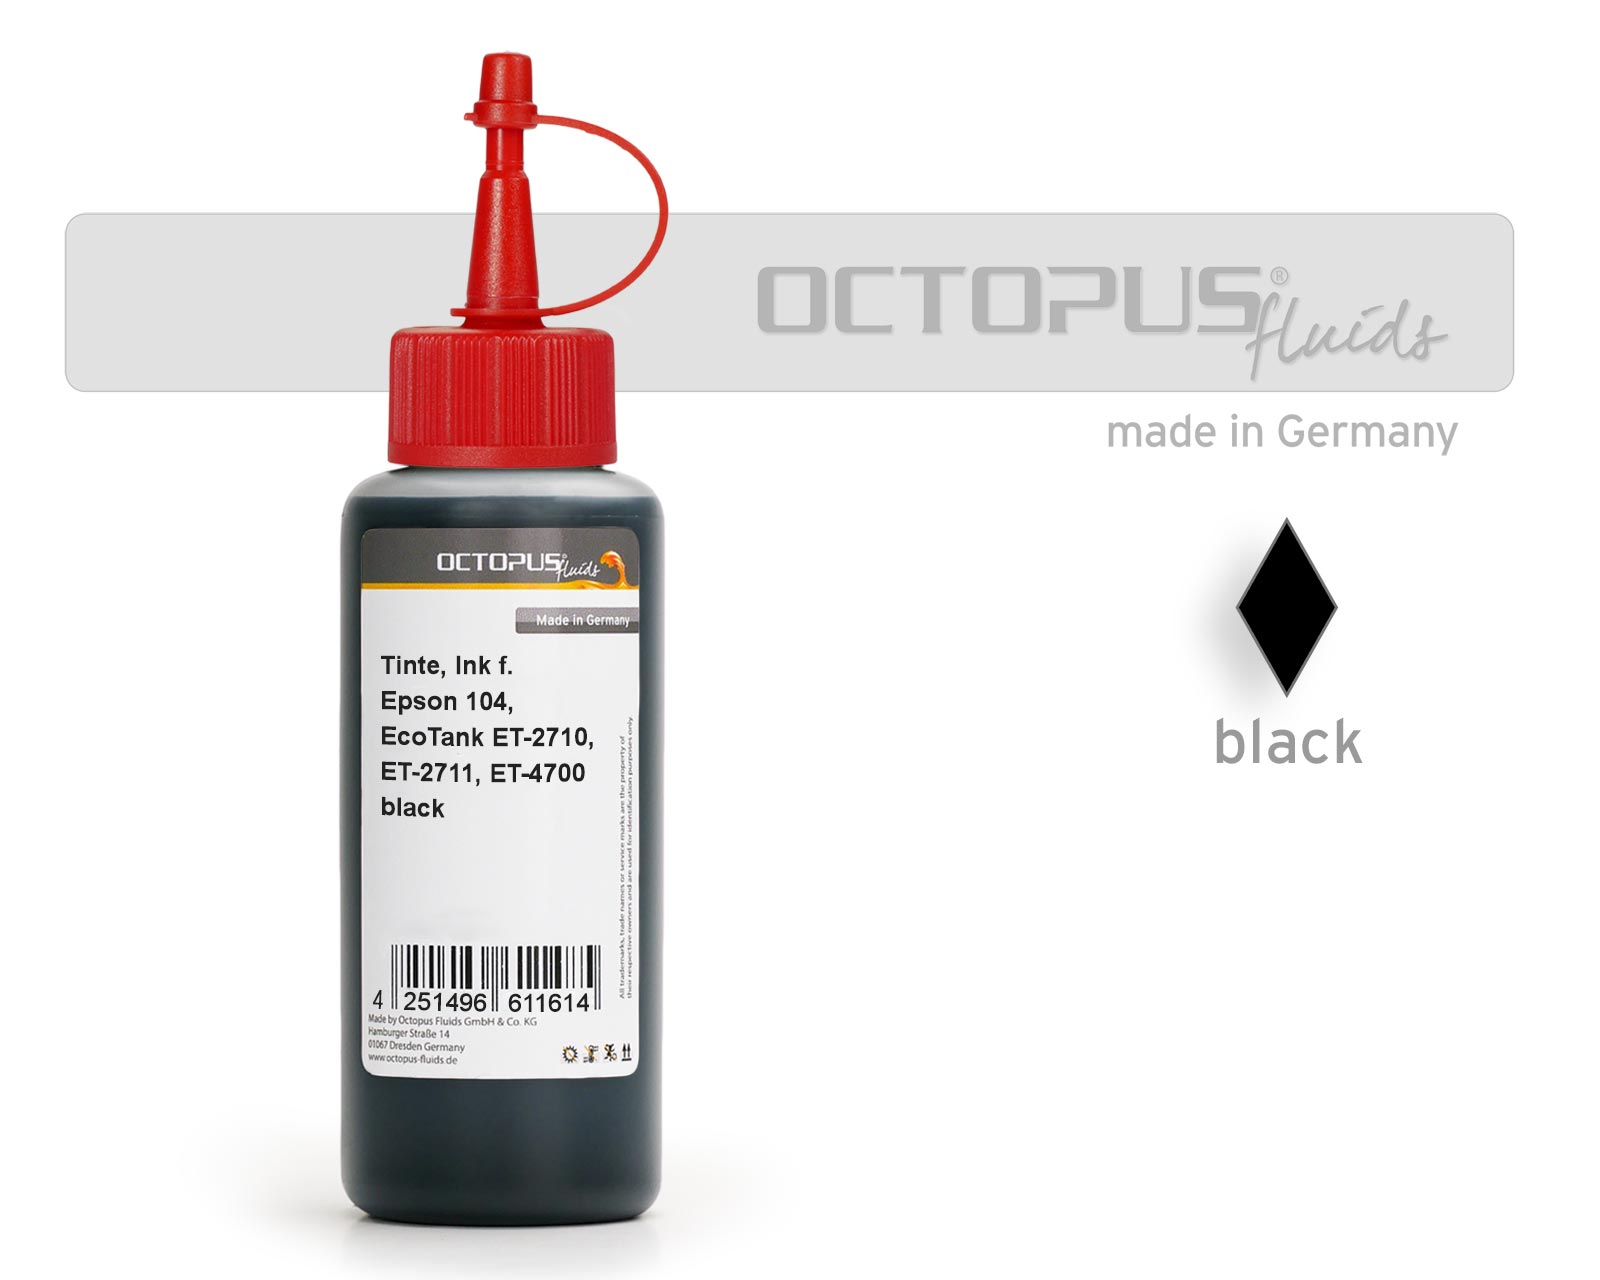 Refill ink for Epson 104, EcoTank ET-2710, ET-2711, ET-4700 black